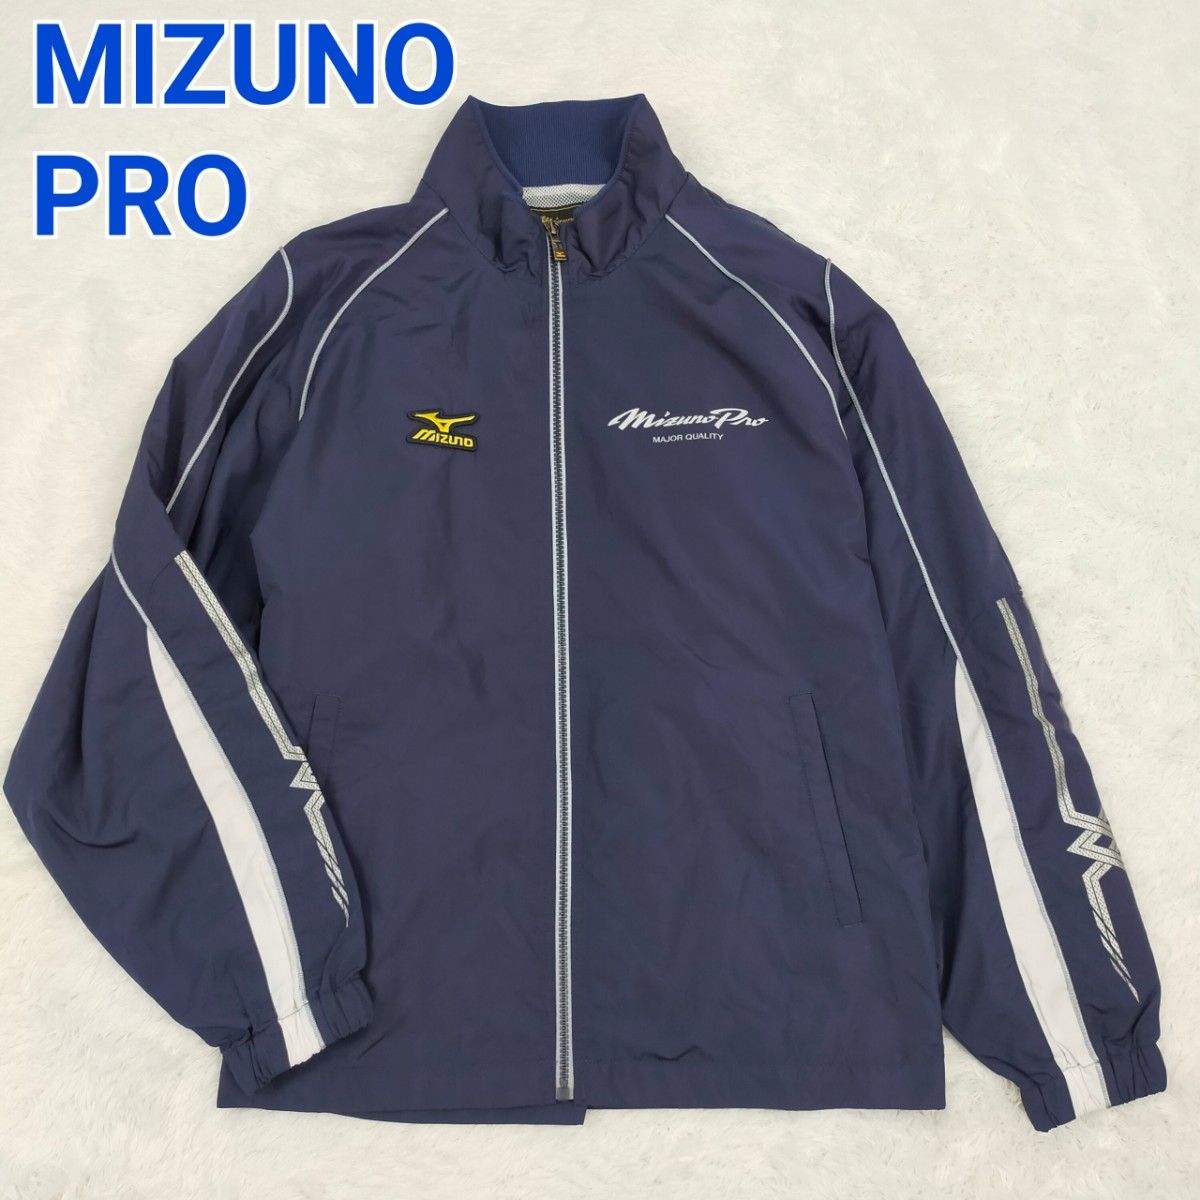 MIZUNO PRO  ミズノプロ ウインドブレーカー ナイロンジャケット メンズ Mサイズ